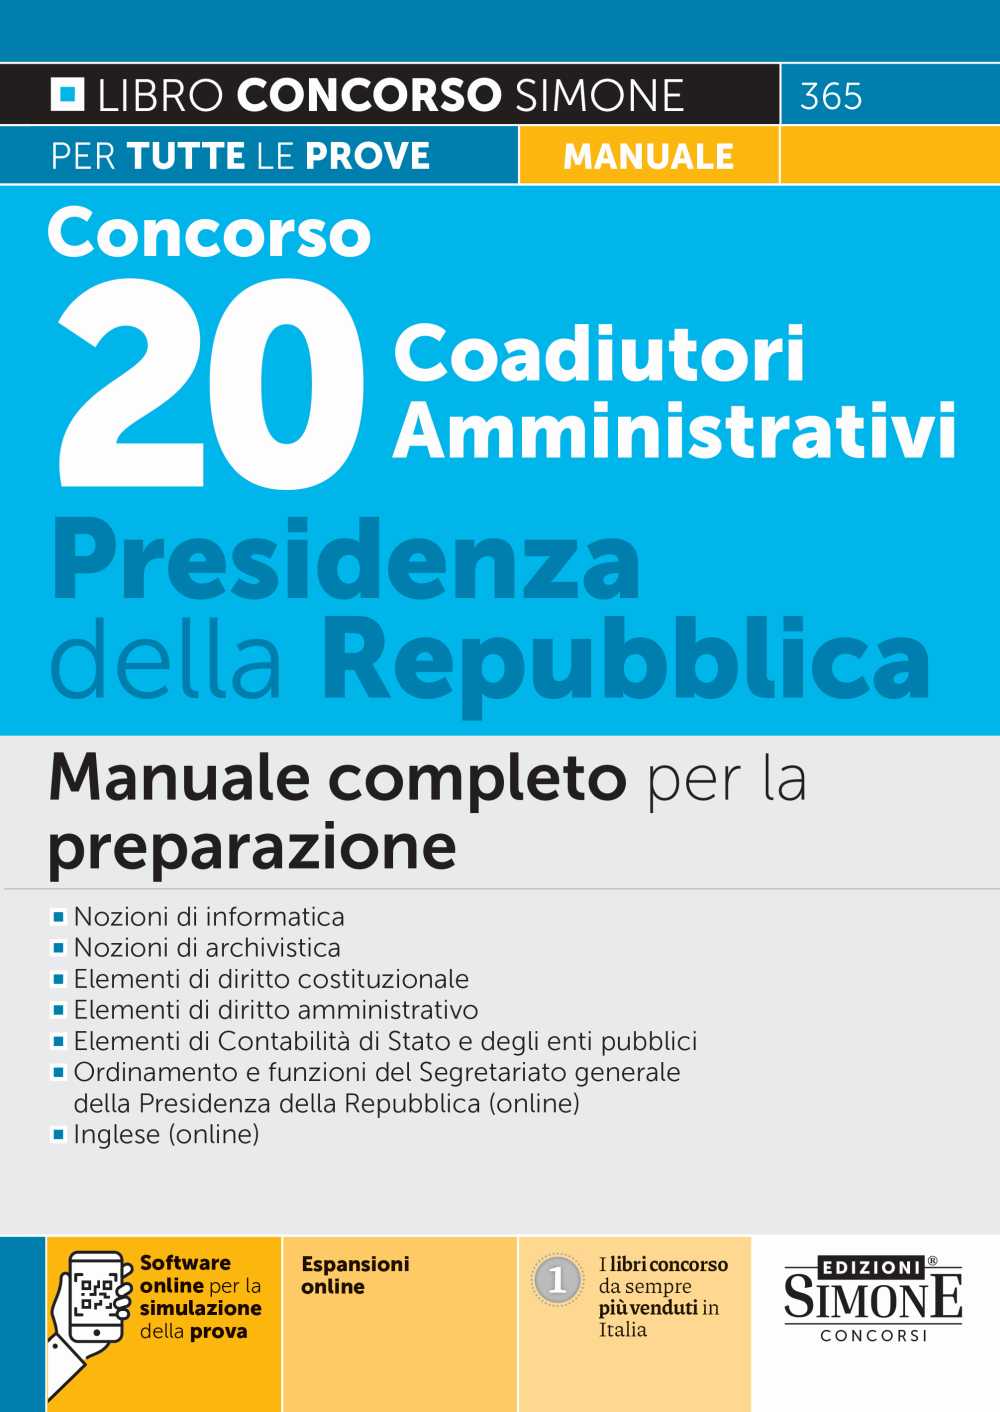 Concorso 20 Coadiutori Amministrativi - Presidenza della Repubblica - Manuale - 365